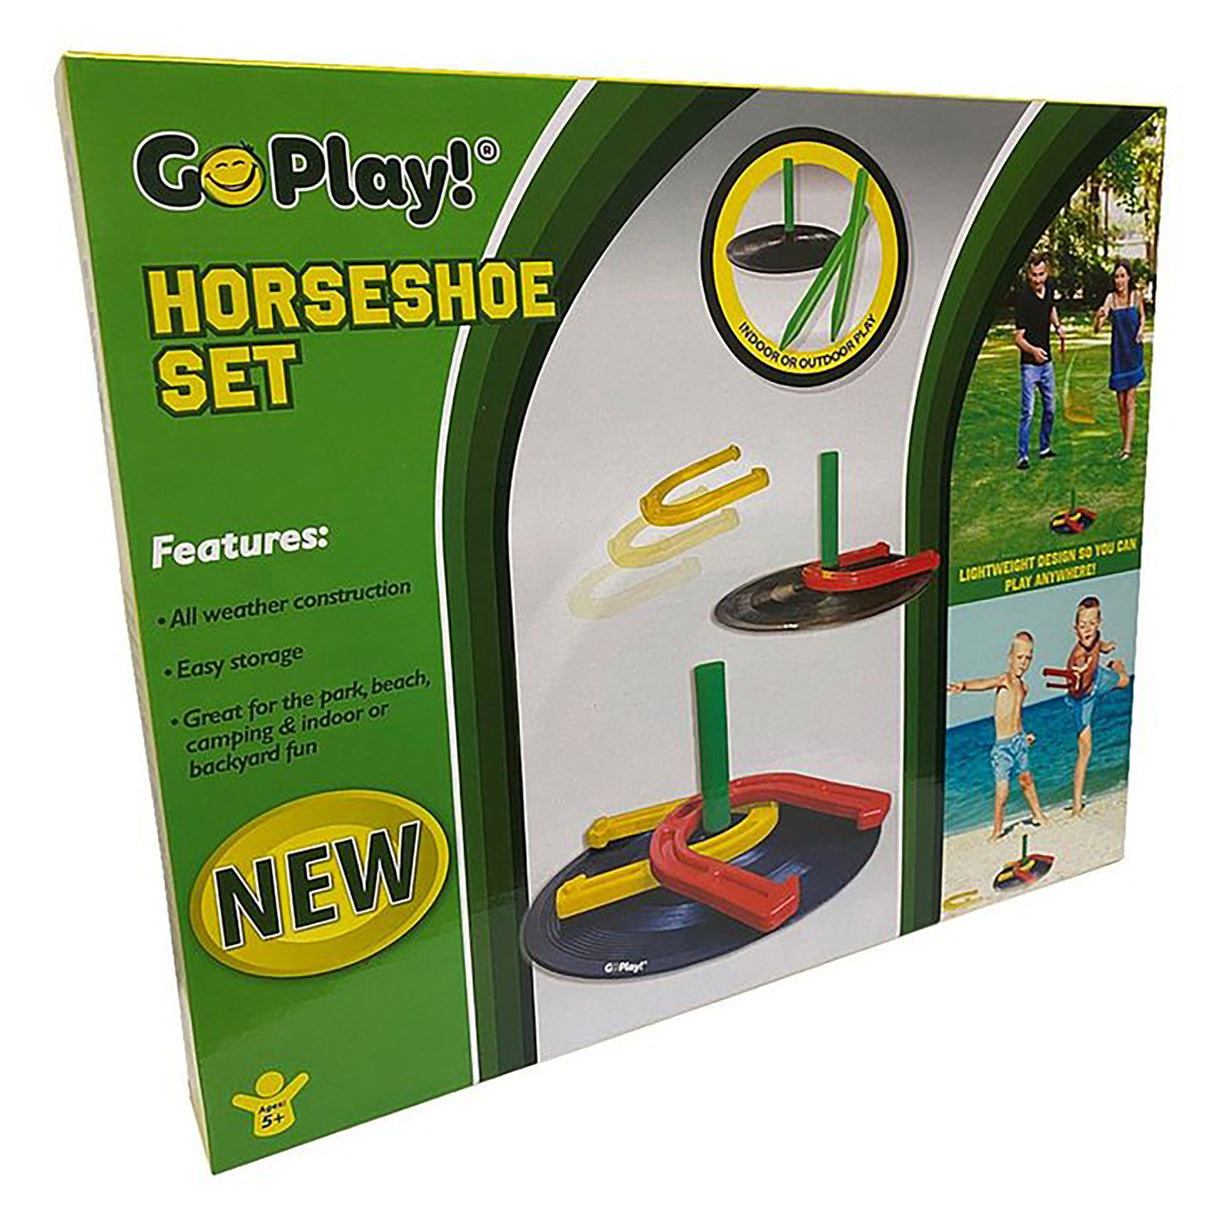 Go Play! Horseshoe Set